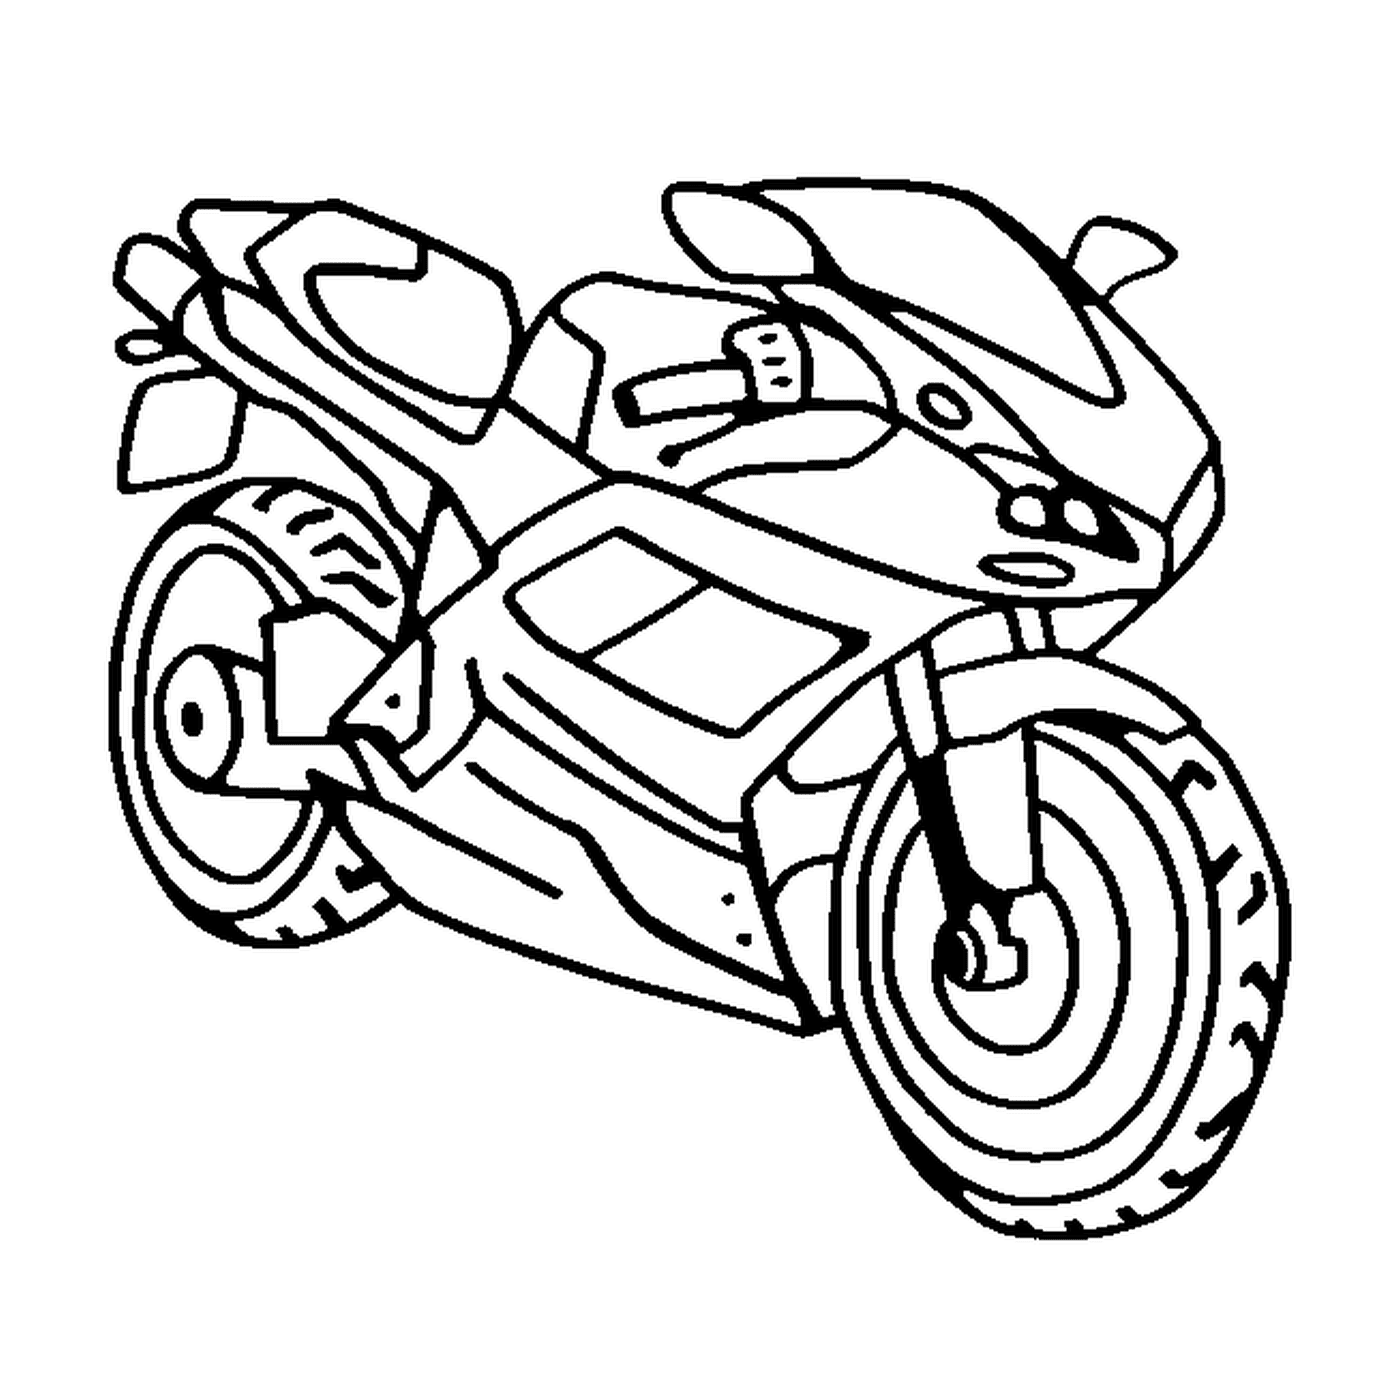  Número da motocicleta 44 